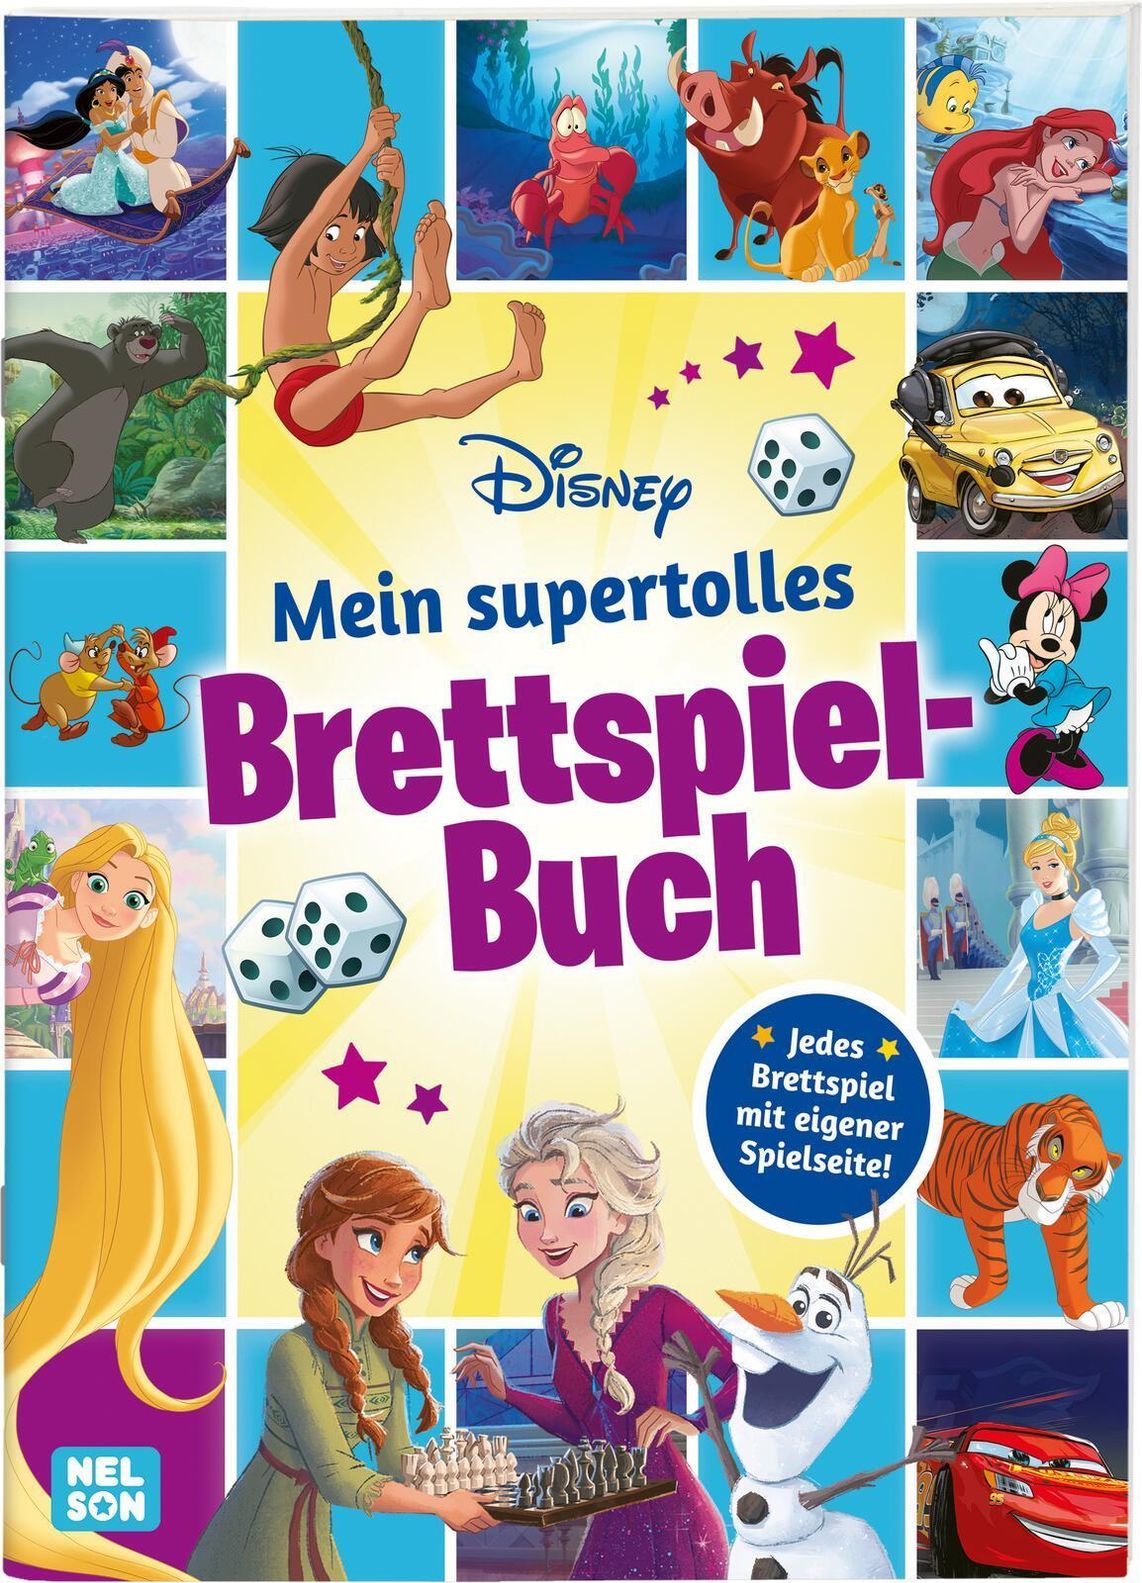 Disney: Mein supertolles Brettspiel-Buch kaufen | tausendkind.de